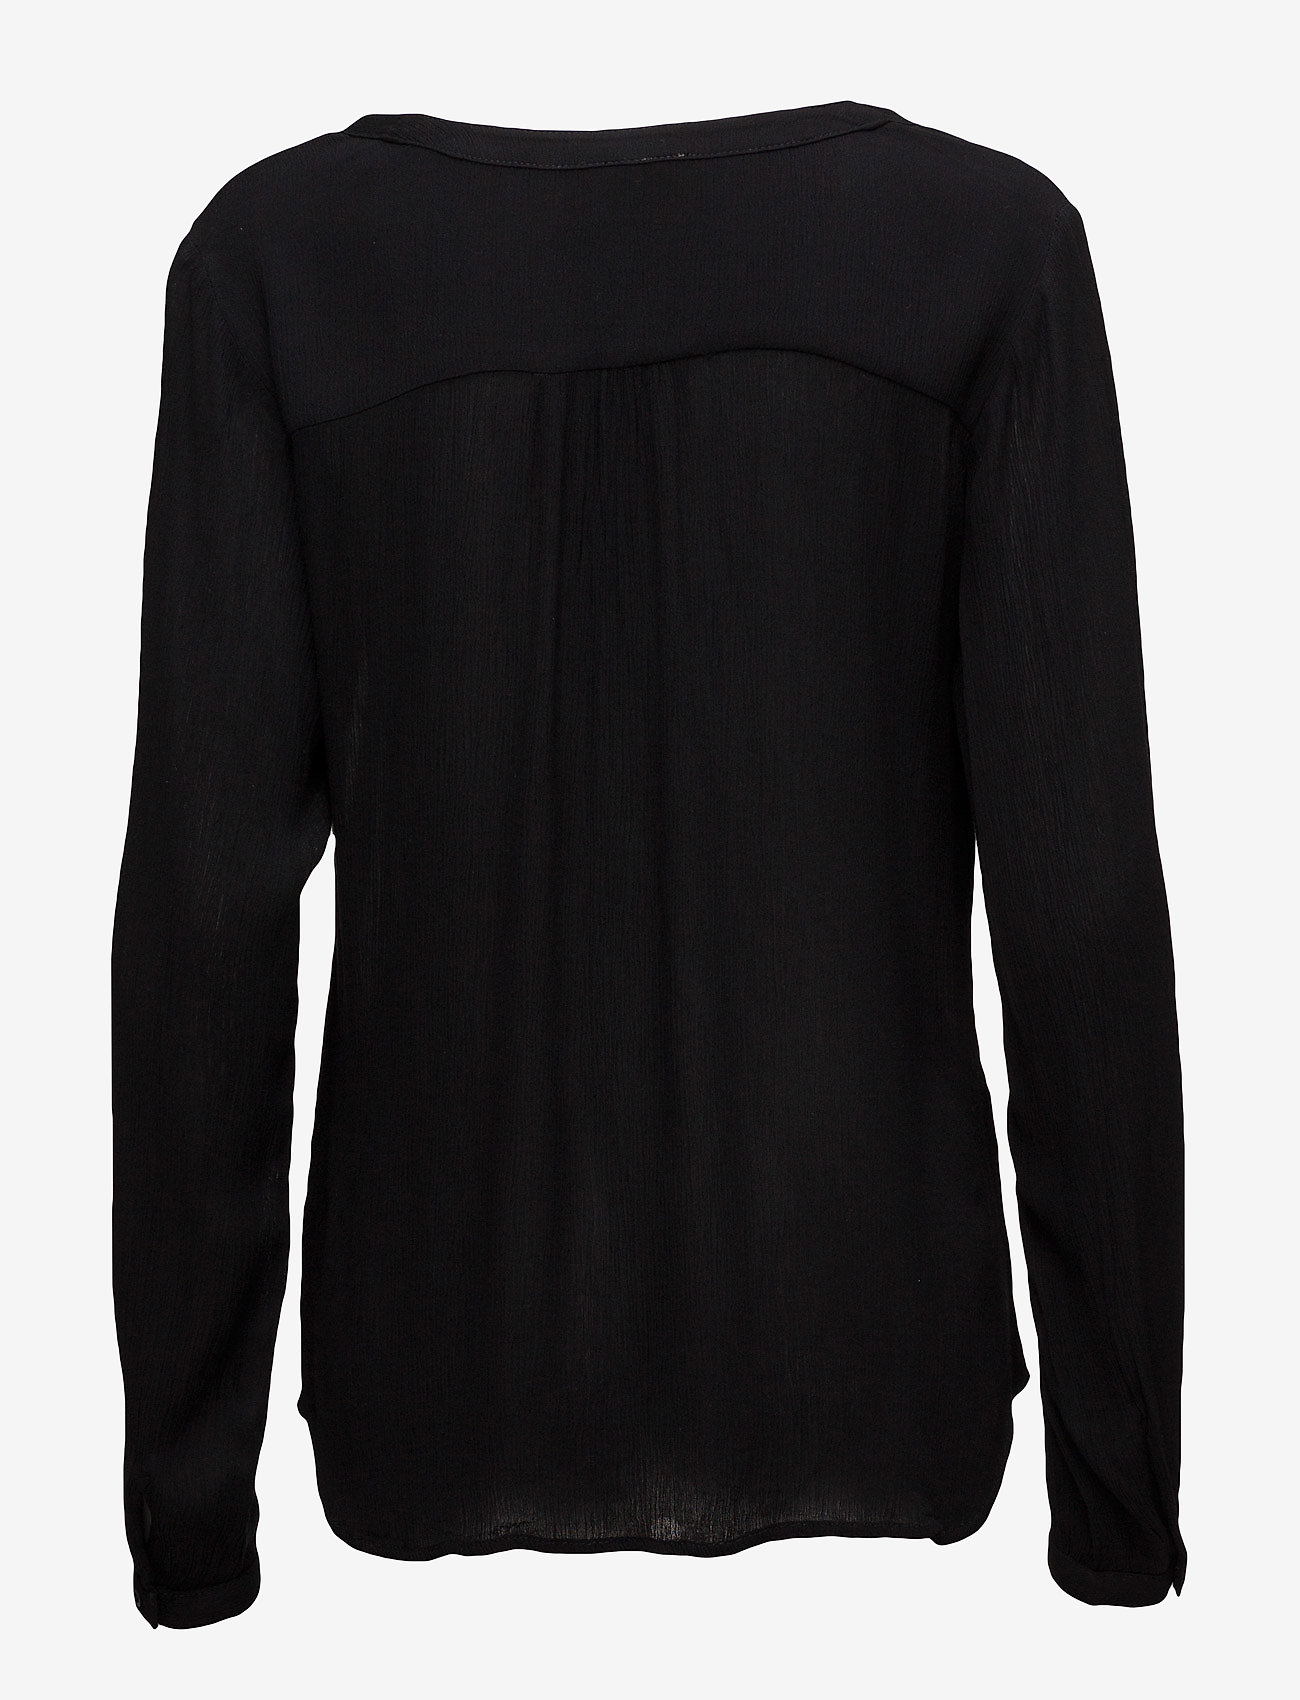 Kaffe - Amber Blouse LS - long-sleeved blouses - black - 1